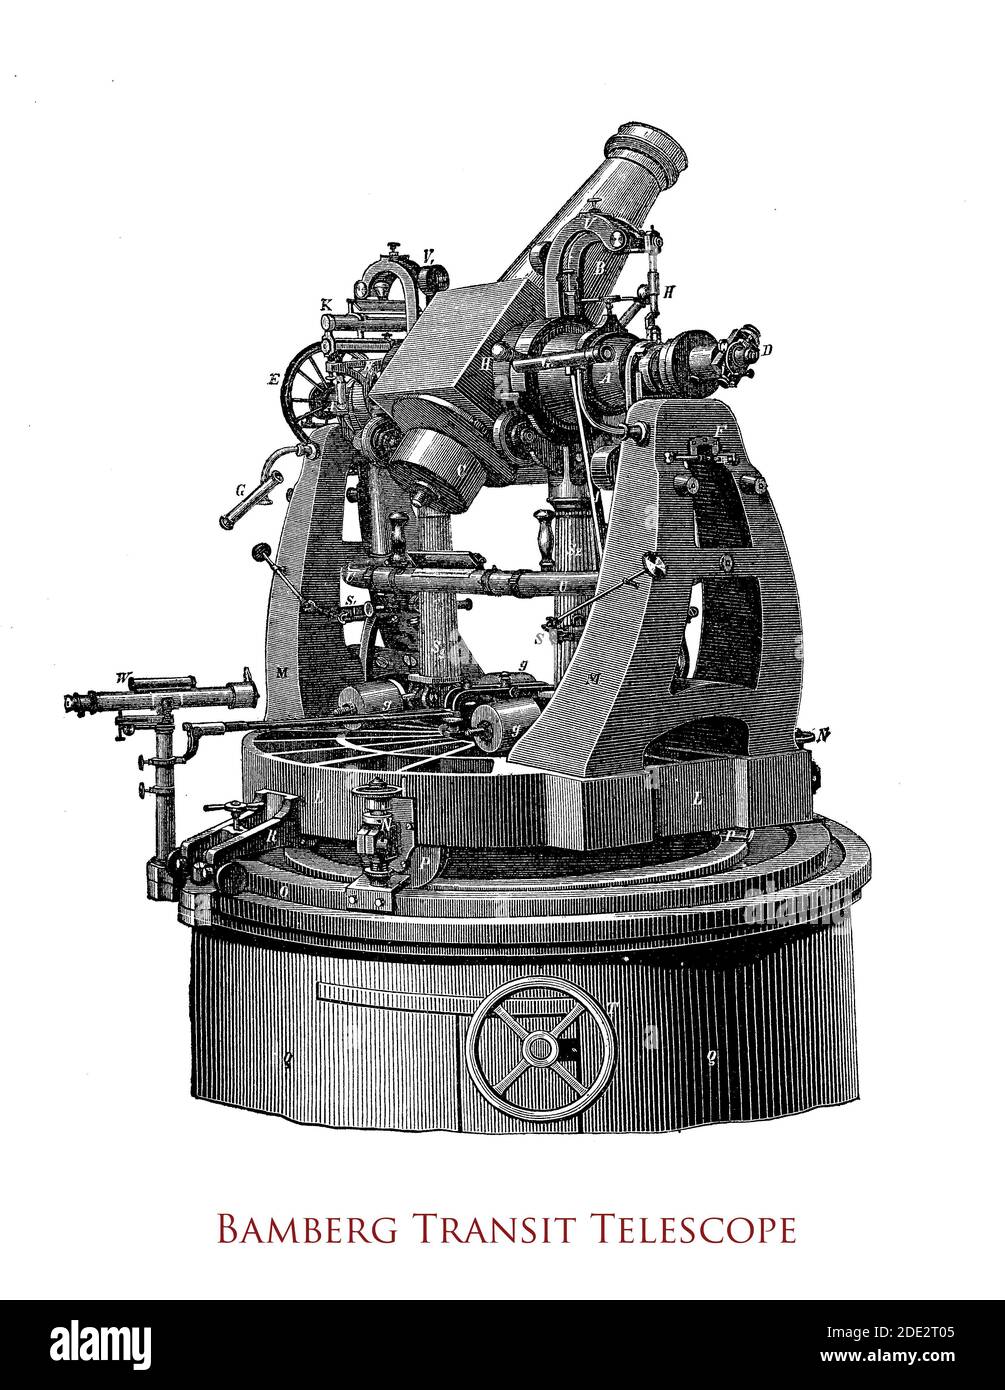 Geodätisches Transitteleskop, gebaut von Carl Bamberg (1847-1892) Lehrling bei Carl Zeiss für Längenbestimmung, Messung von horizontalen und vertikalen Winkeln Stockfoto